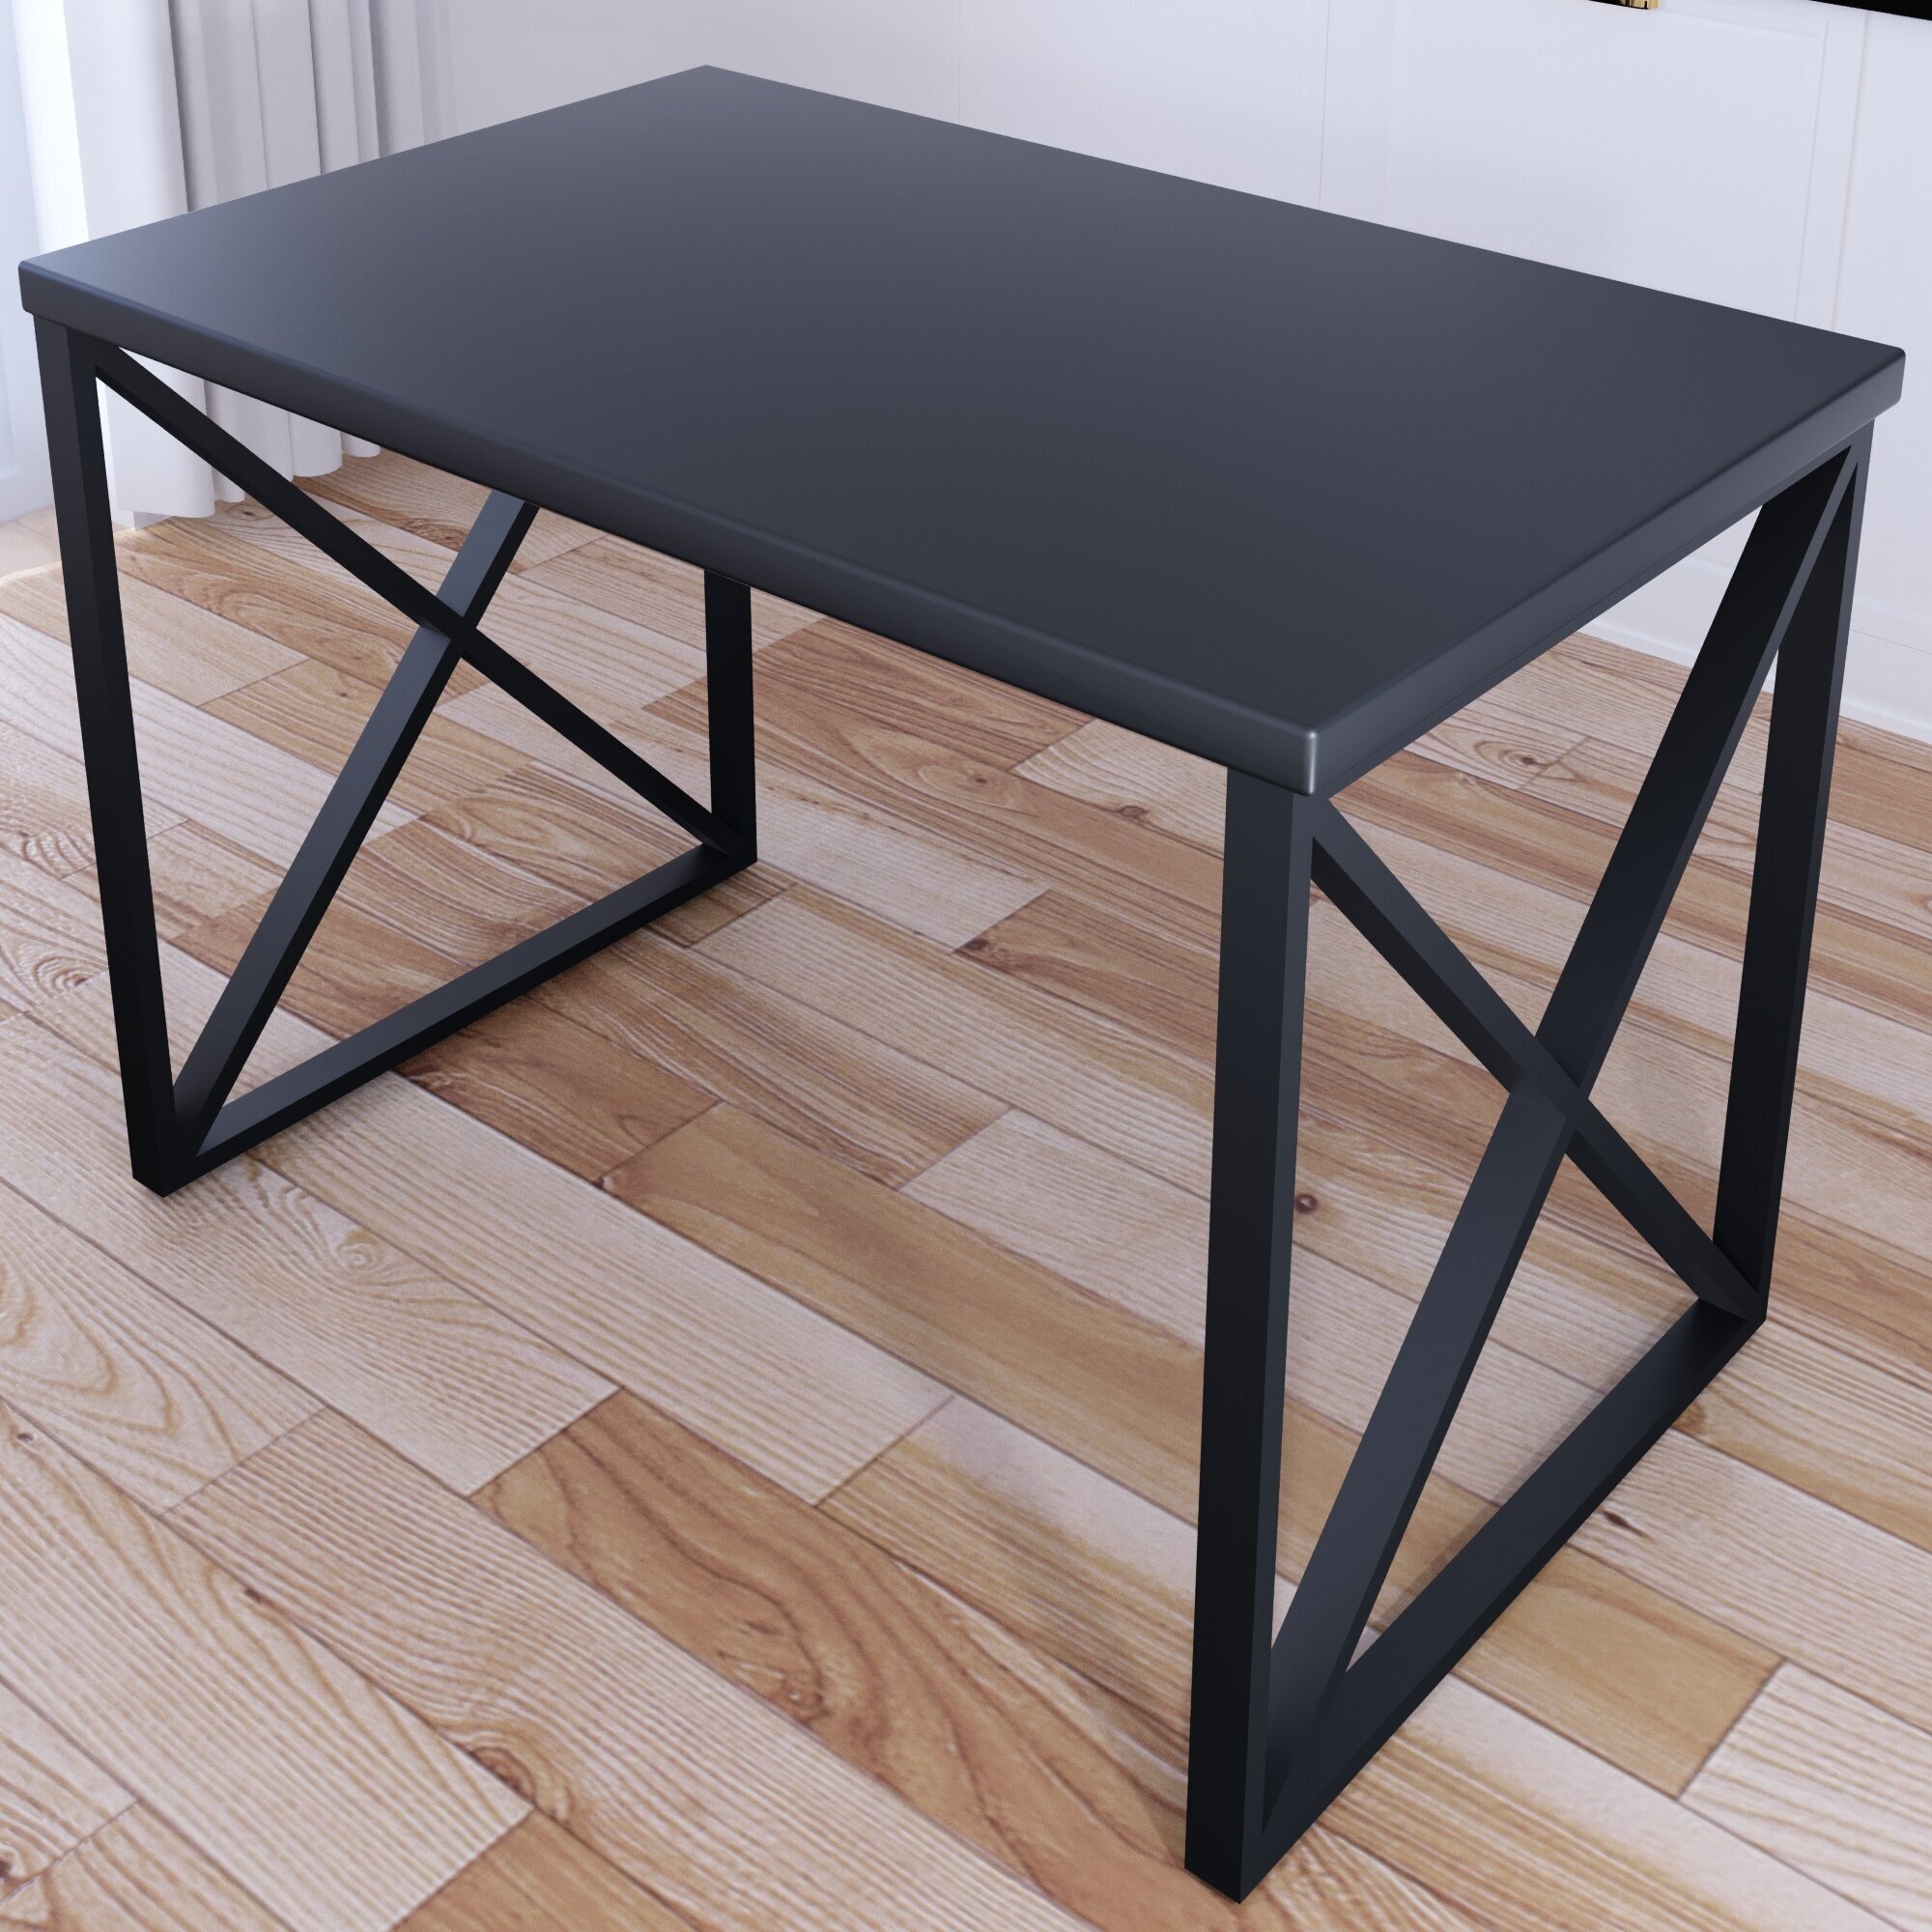 Стол кухонный Loft со столешницей цвета антрацит из массива сосны 40 мм и черными металлическими крестообразными ножками, 120х60х75 см